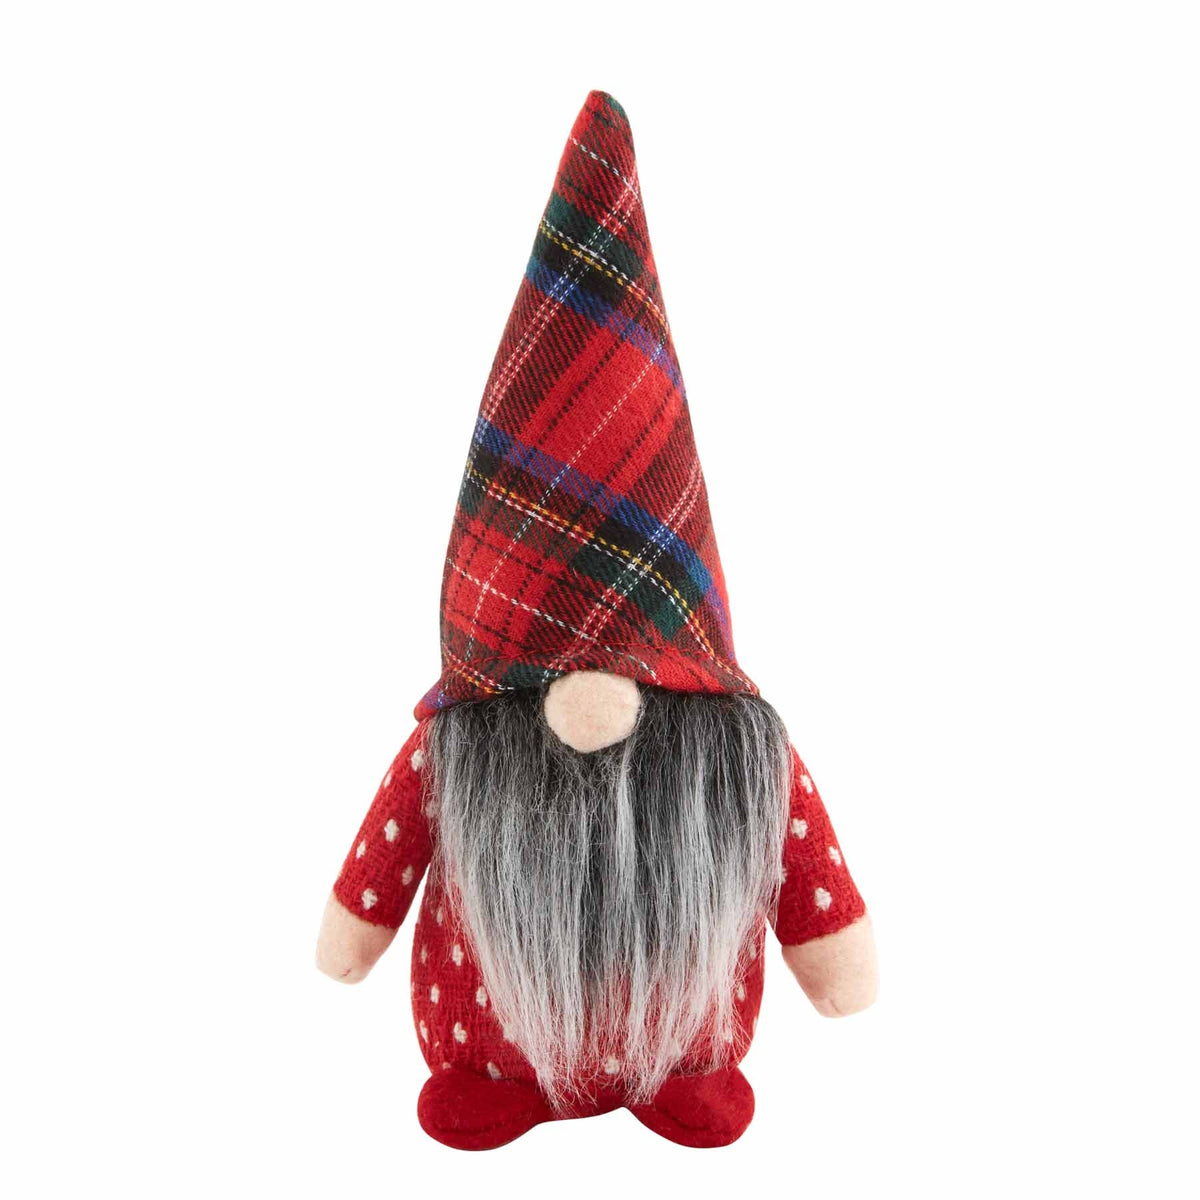 Mudpie Small Christmas Gnome